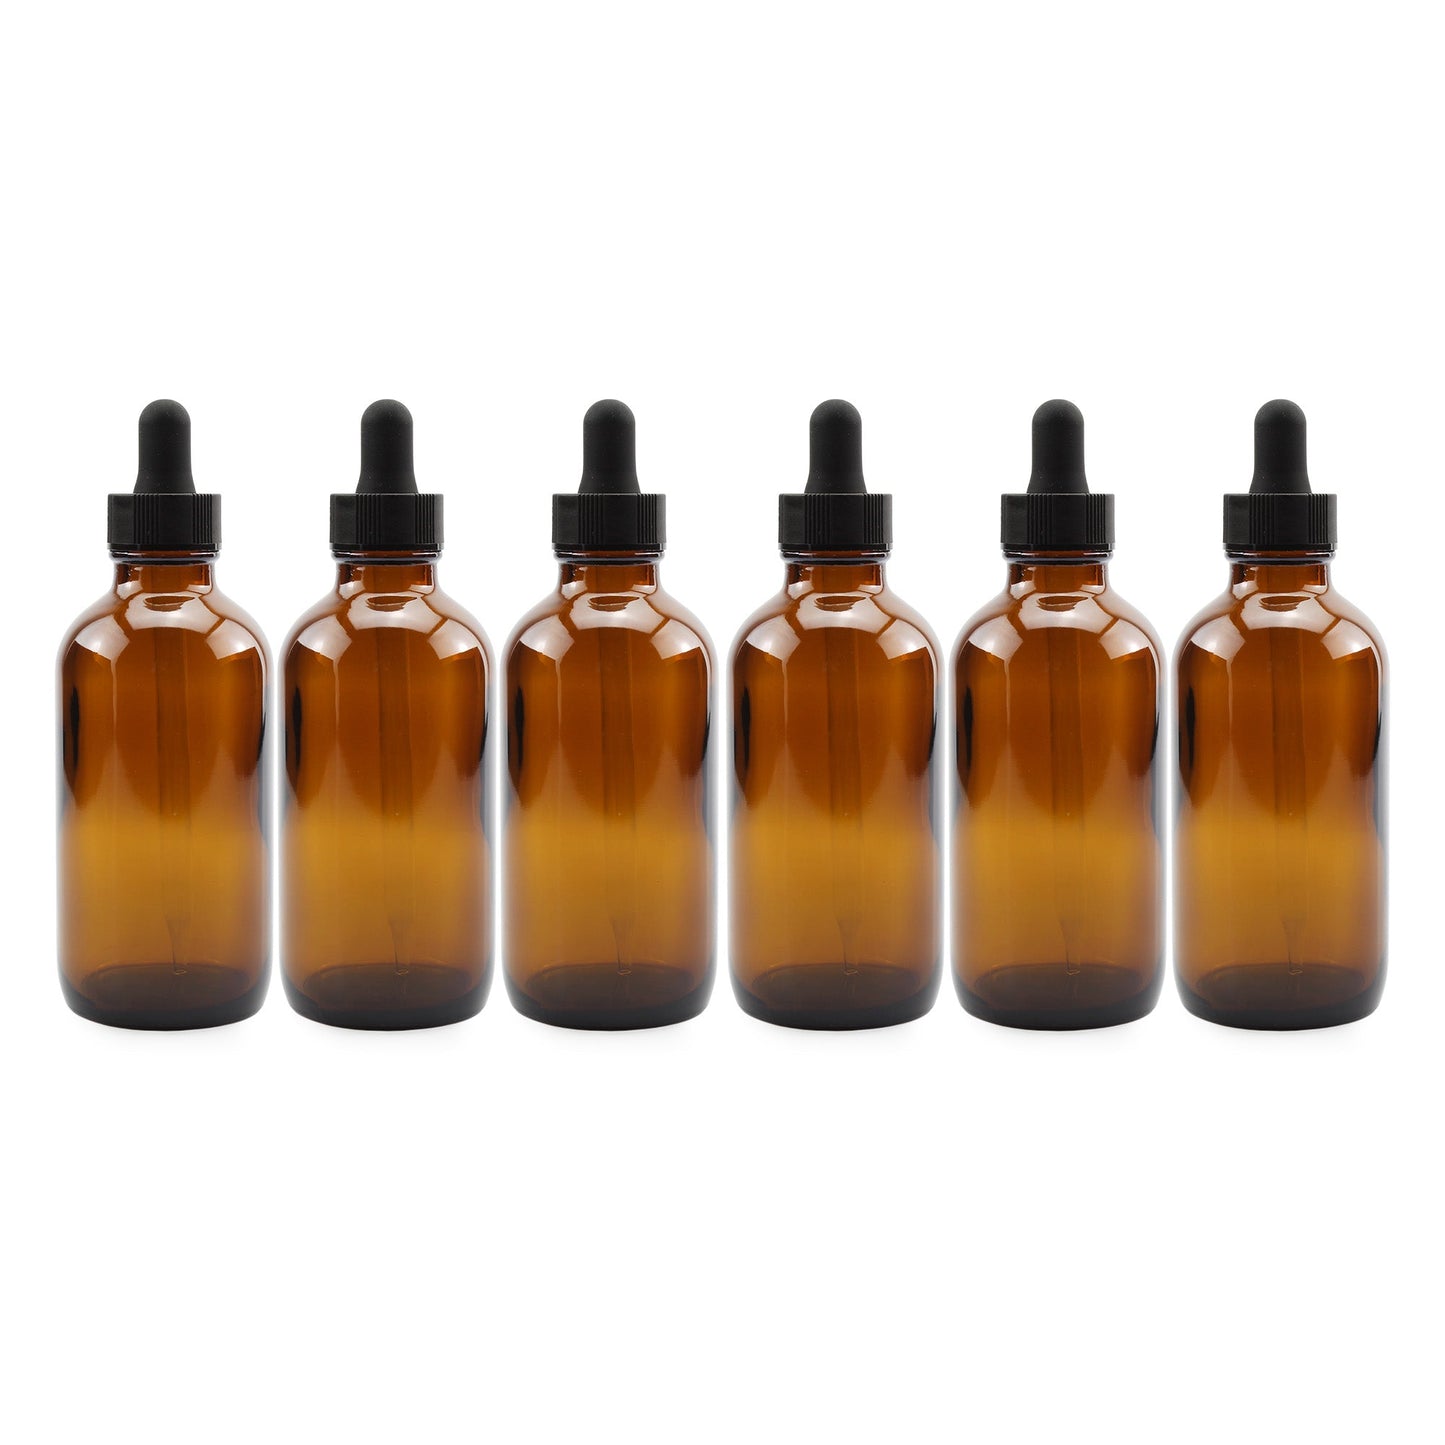 4oz Amber Glass Dropper Bottles (6-Pack) - sh1265cb0